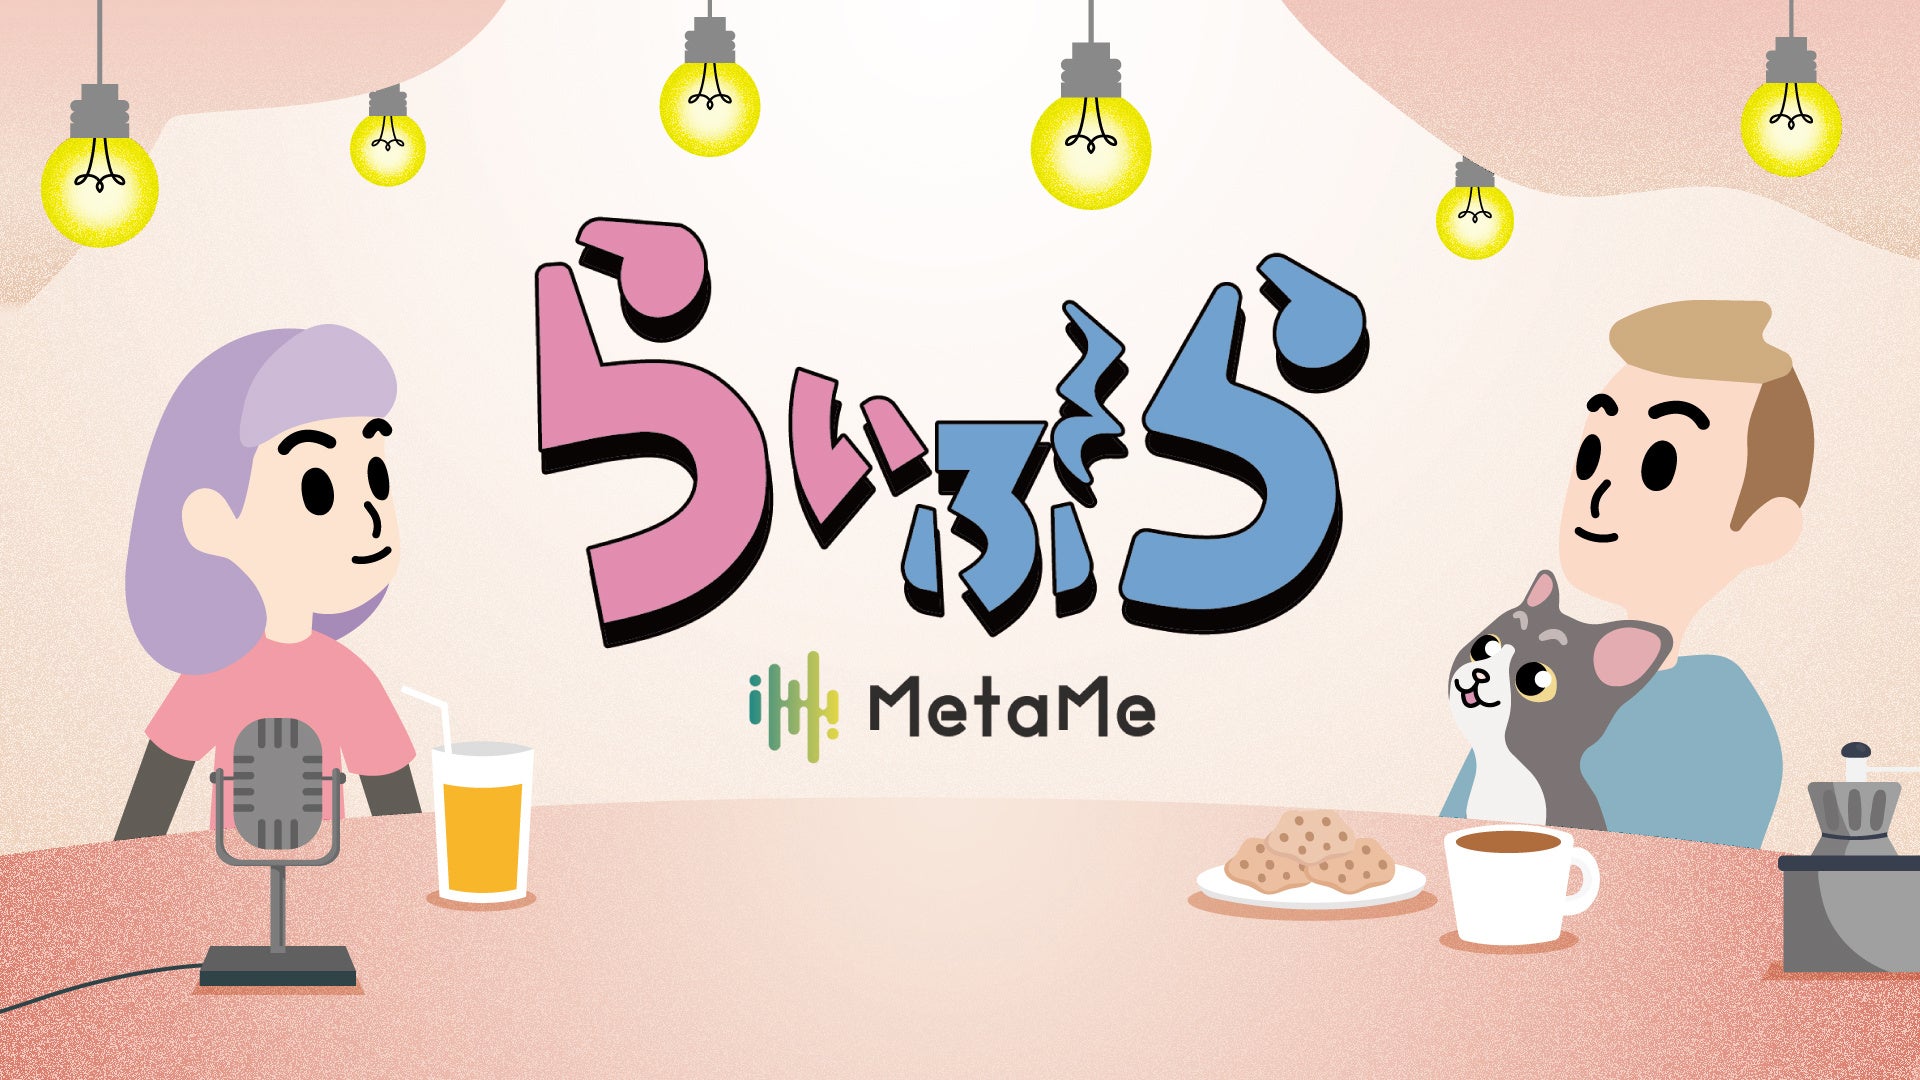 新番組開始！MetaMe初のレギュラー帯番組「らいぶら」。5月27日（月）より、ライブハウス空間「MetaMe生放送(めたなま)」で放送スタート